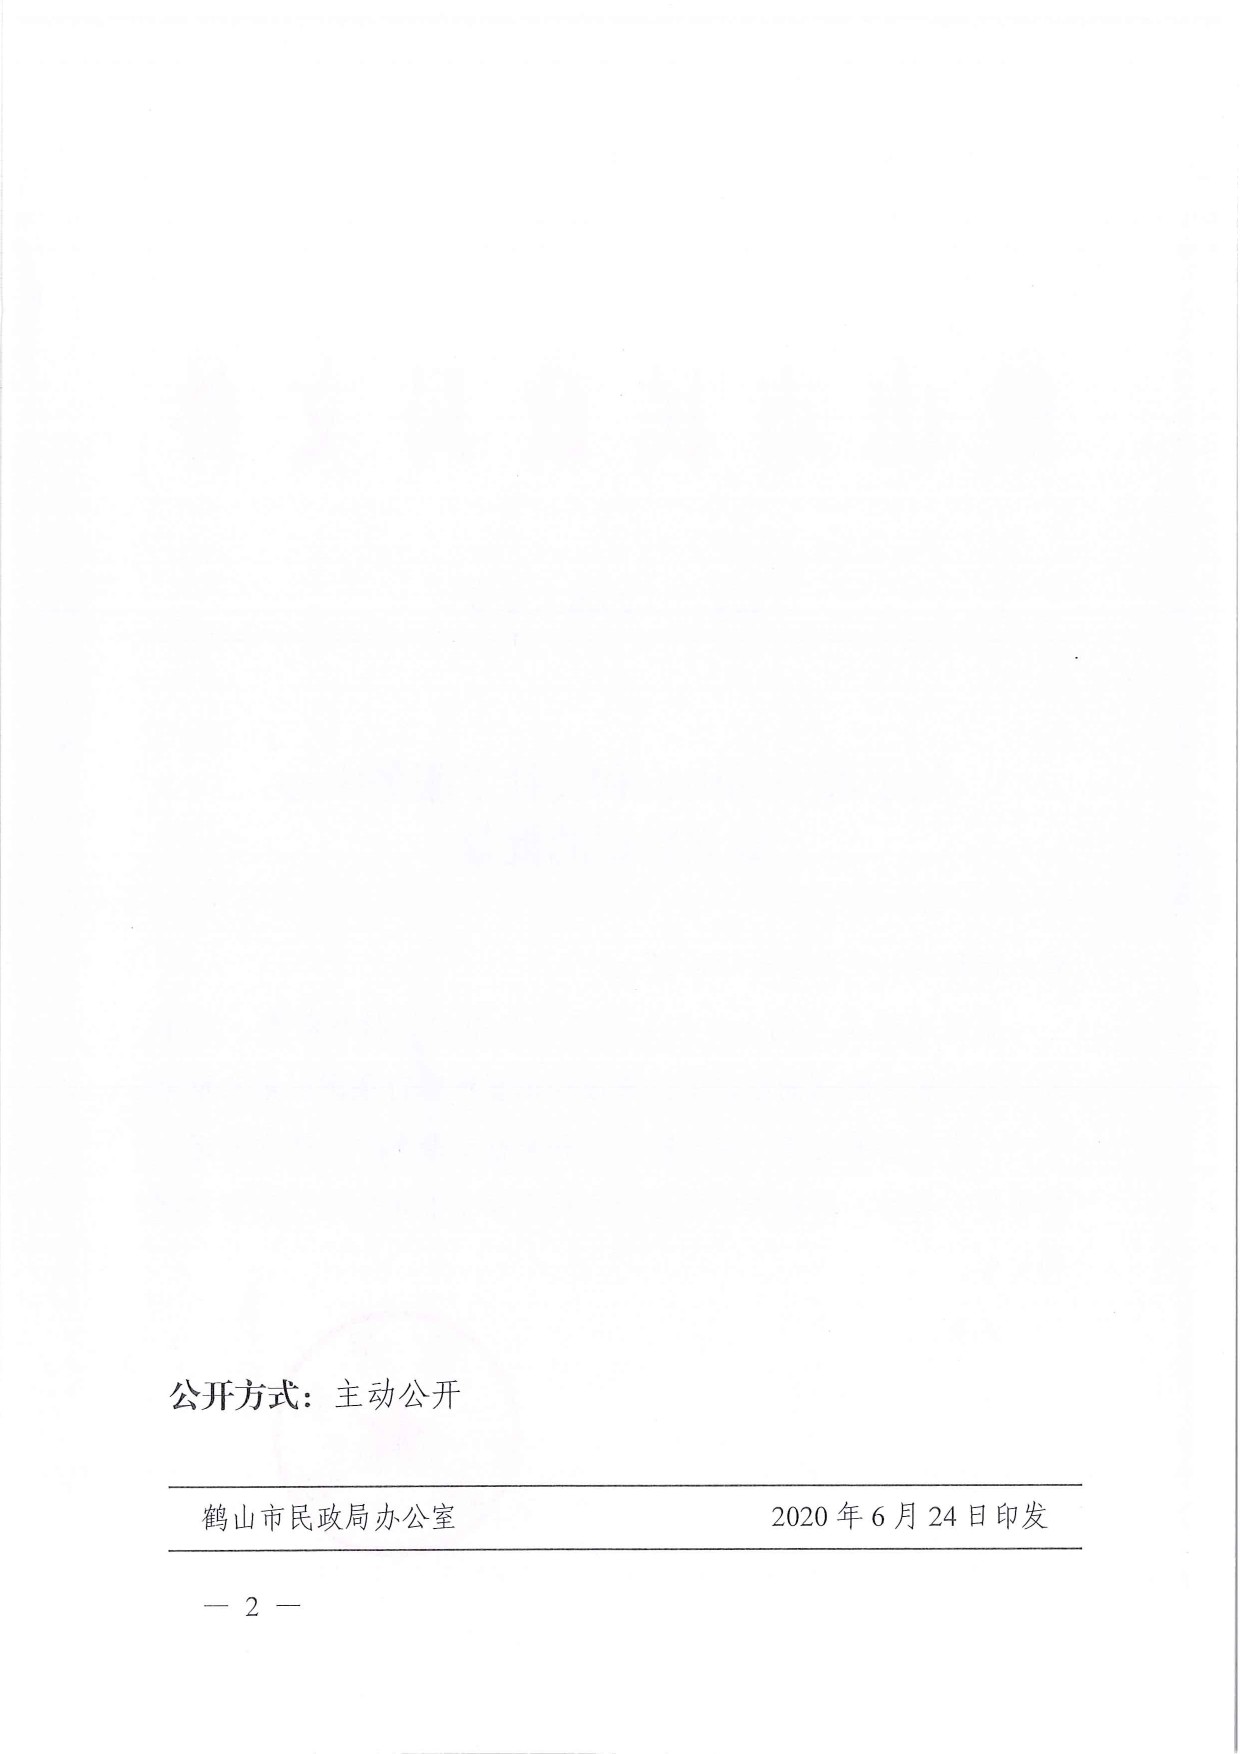 鹤民社〔2020〕32号关于准予鹤山市和美社工服务中心成立登记的批复-4.jpg